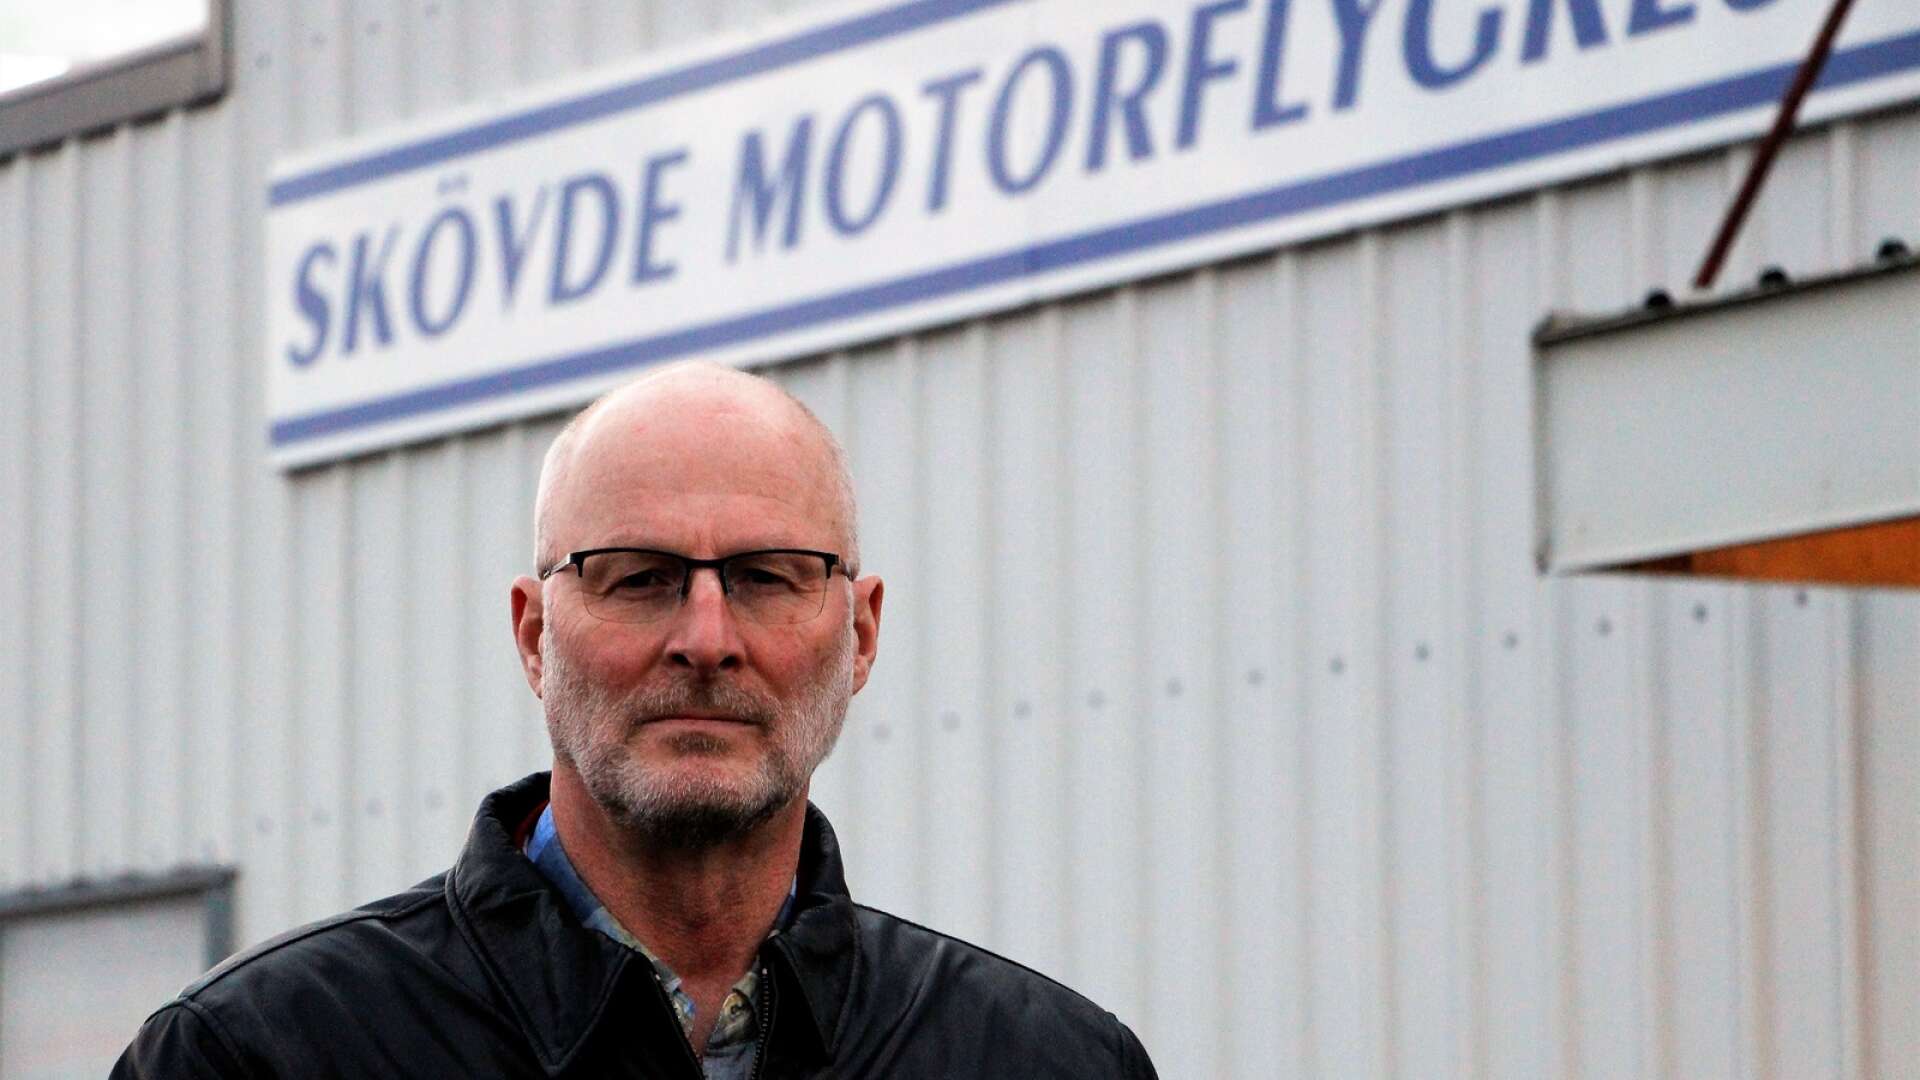  Tomas Kraft, Skövde motorflygklubb är tveksam till förslagen från Skövde och Falköping om en ny flygplats.